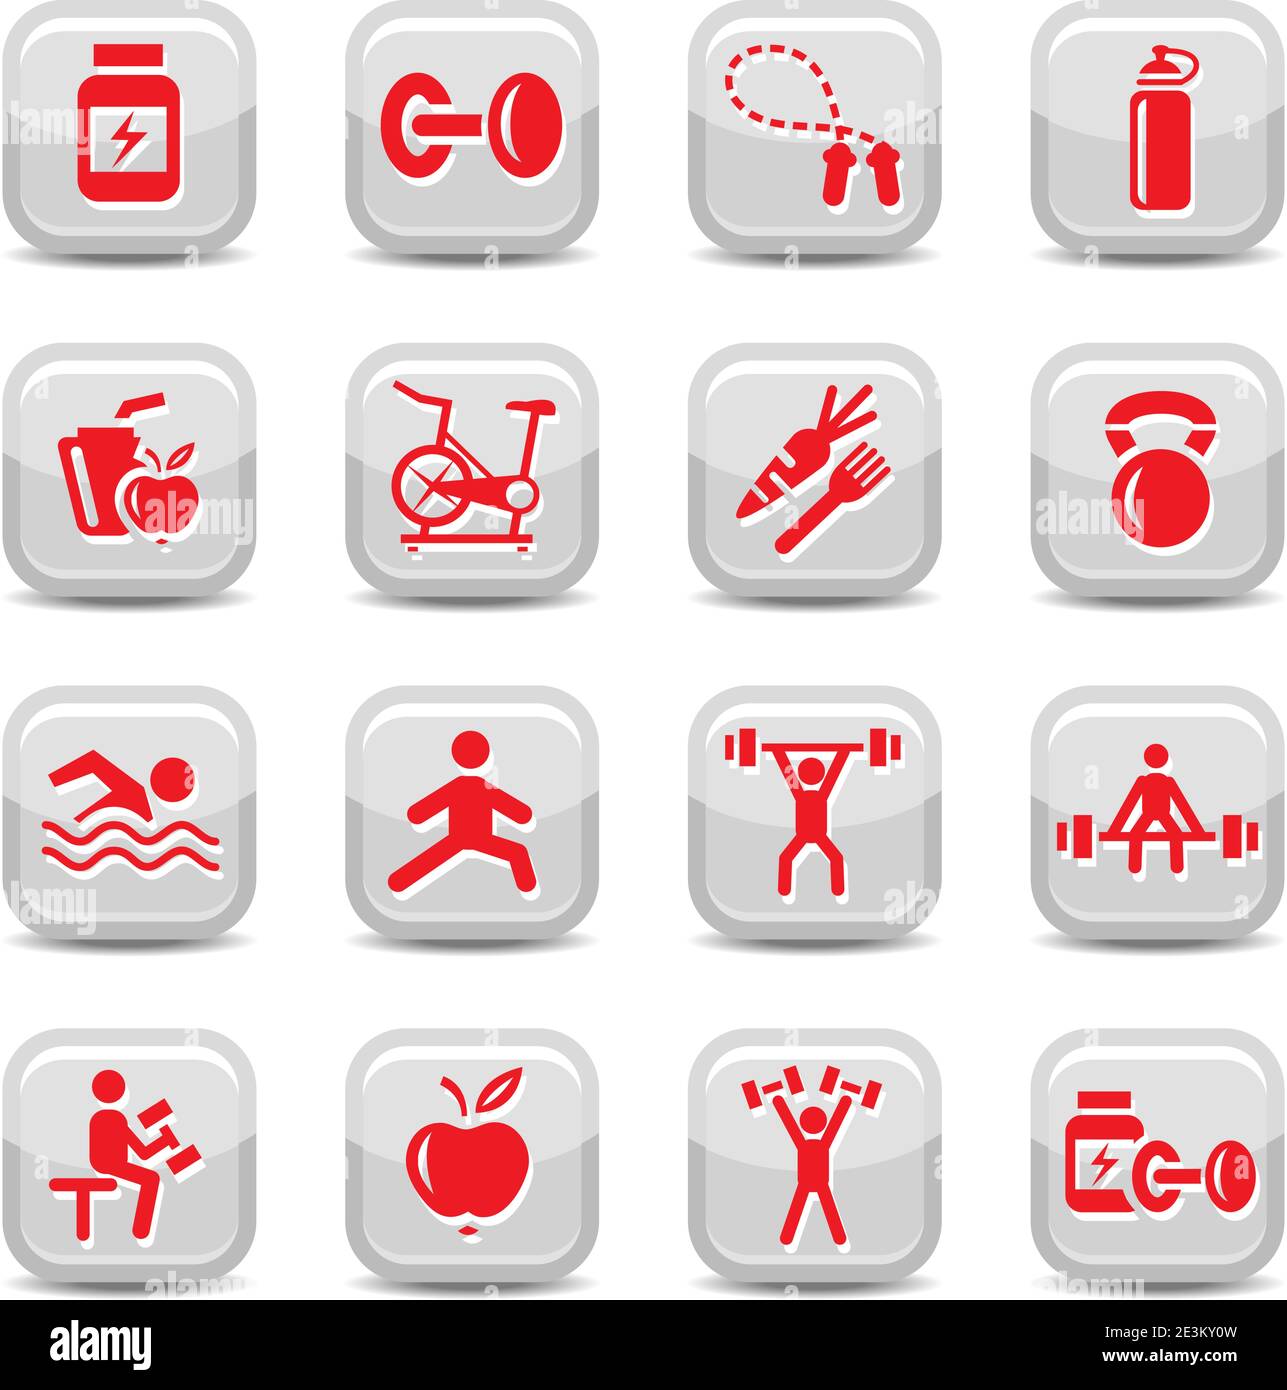 Ensemble d'icônes Vector Bodybuilding et Fitness pour le Web et les mobiles. Tous les éléments sont regroupés. Illustration de Vecteur